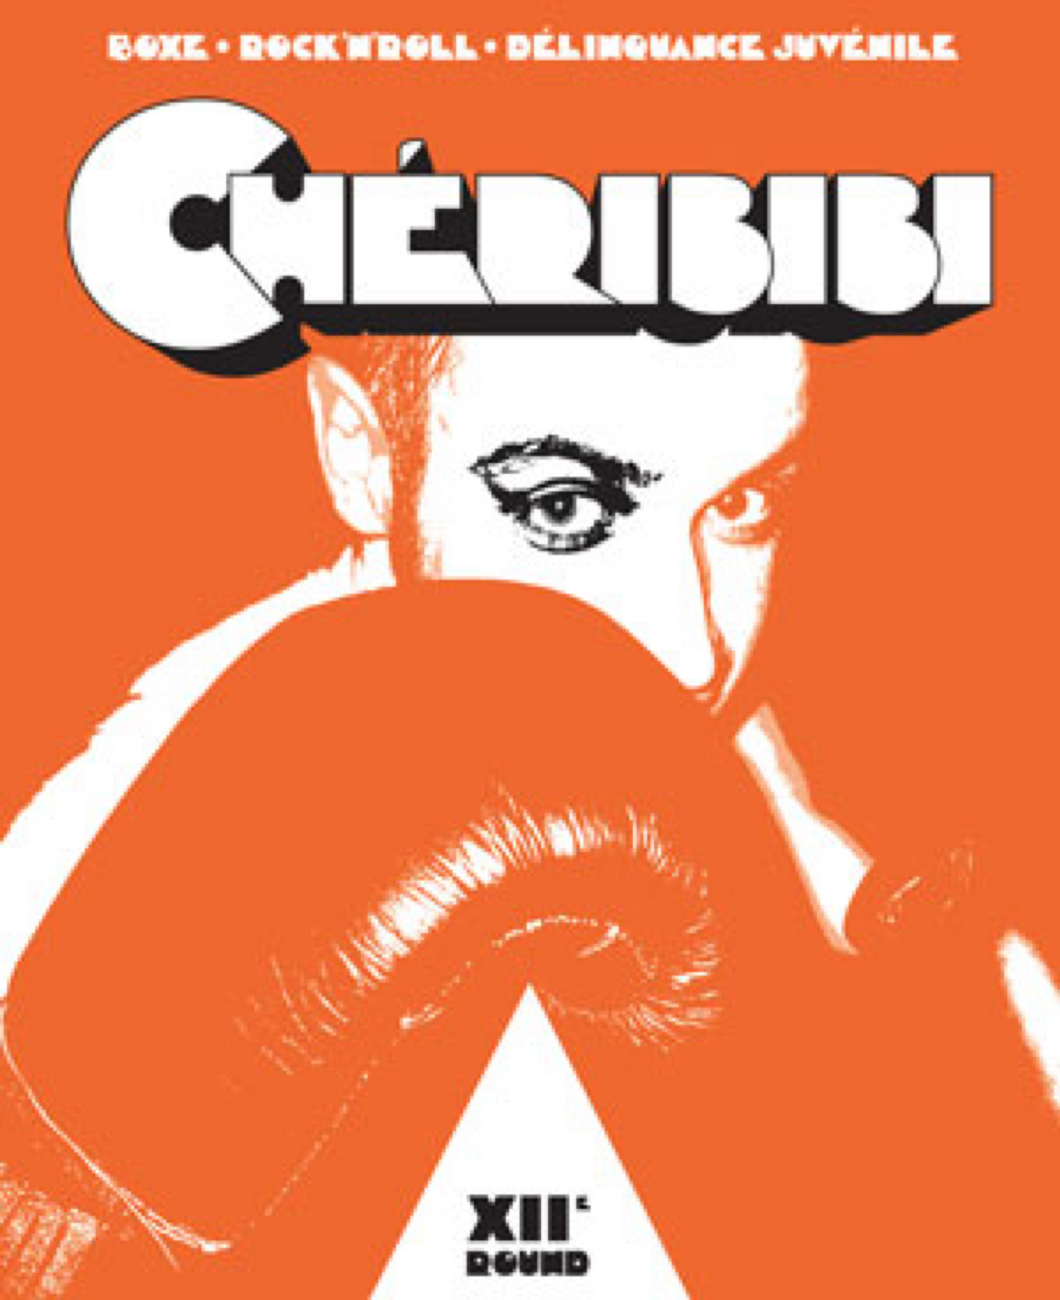 Chéribibi #12